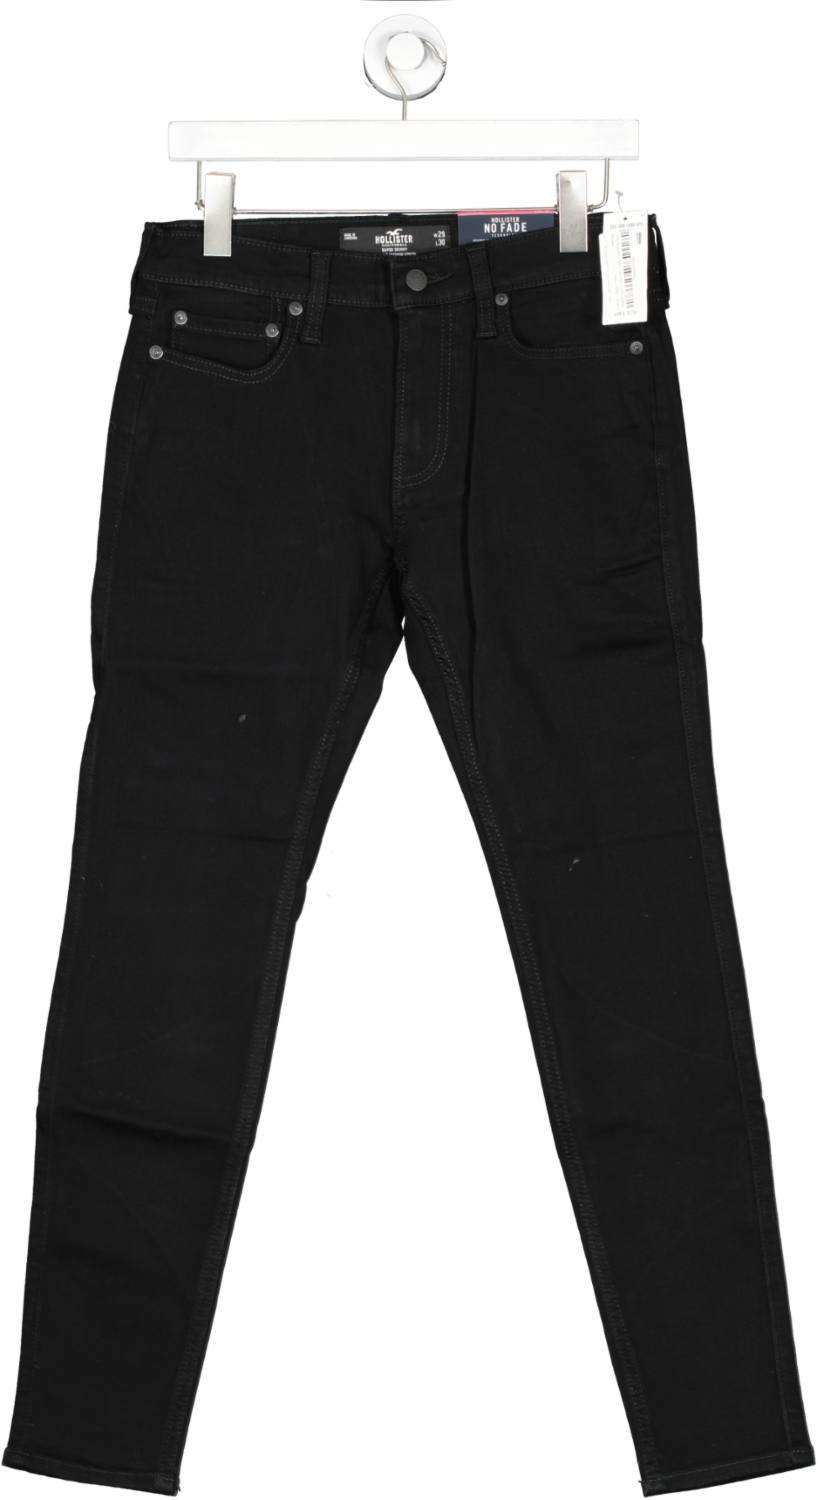 Hollister Black No Fade Black Super Skinny Jeans W29 L30 BNWT